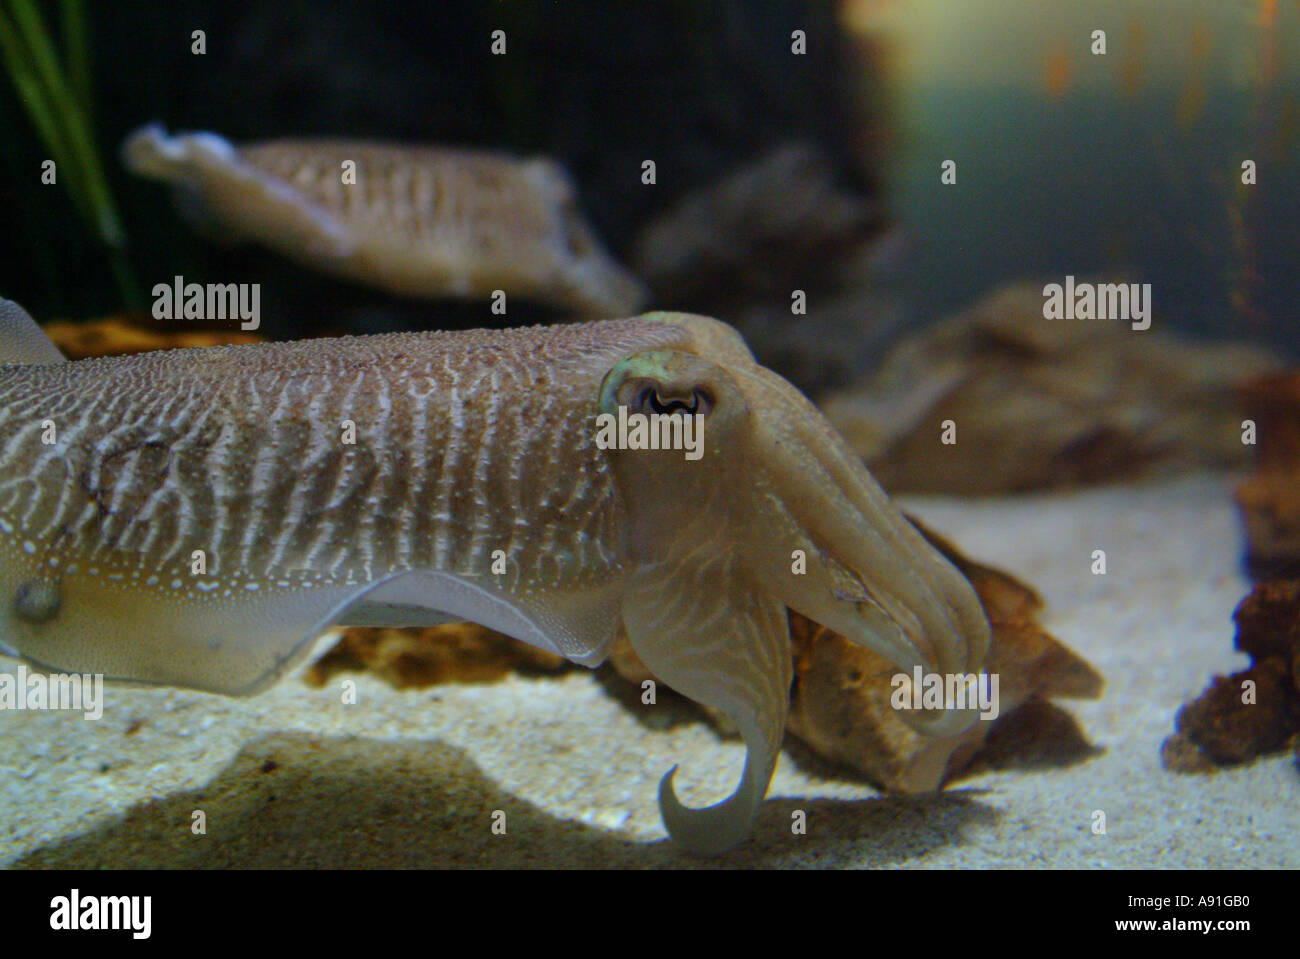 Cuttle fish in aquarium Stock Photo